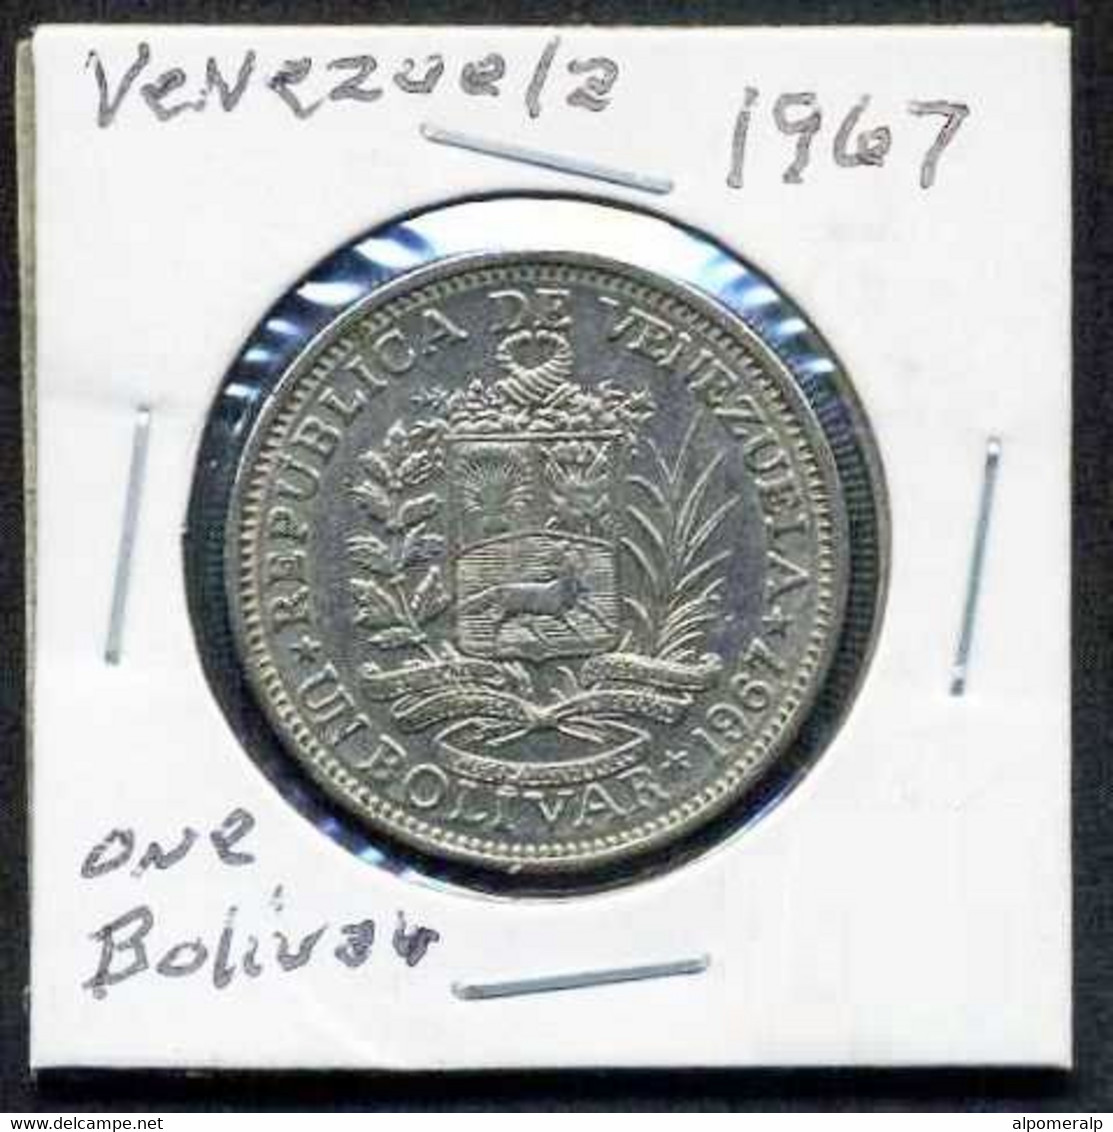 Venezuela 1967 1 Bolivar - Venezuela